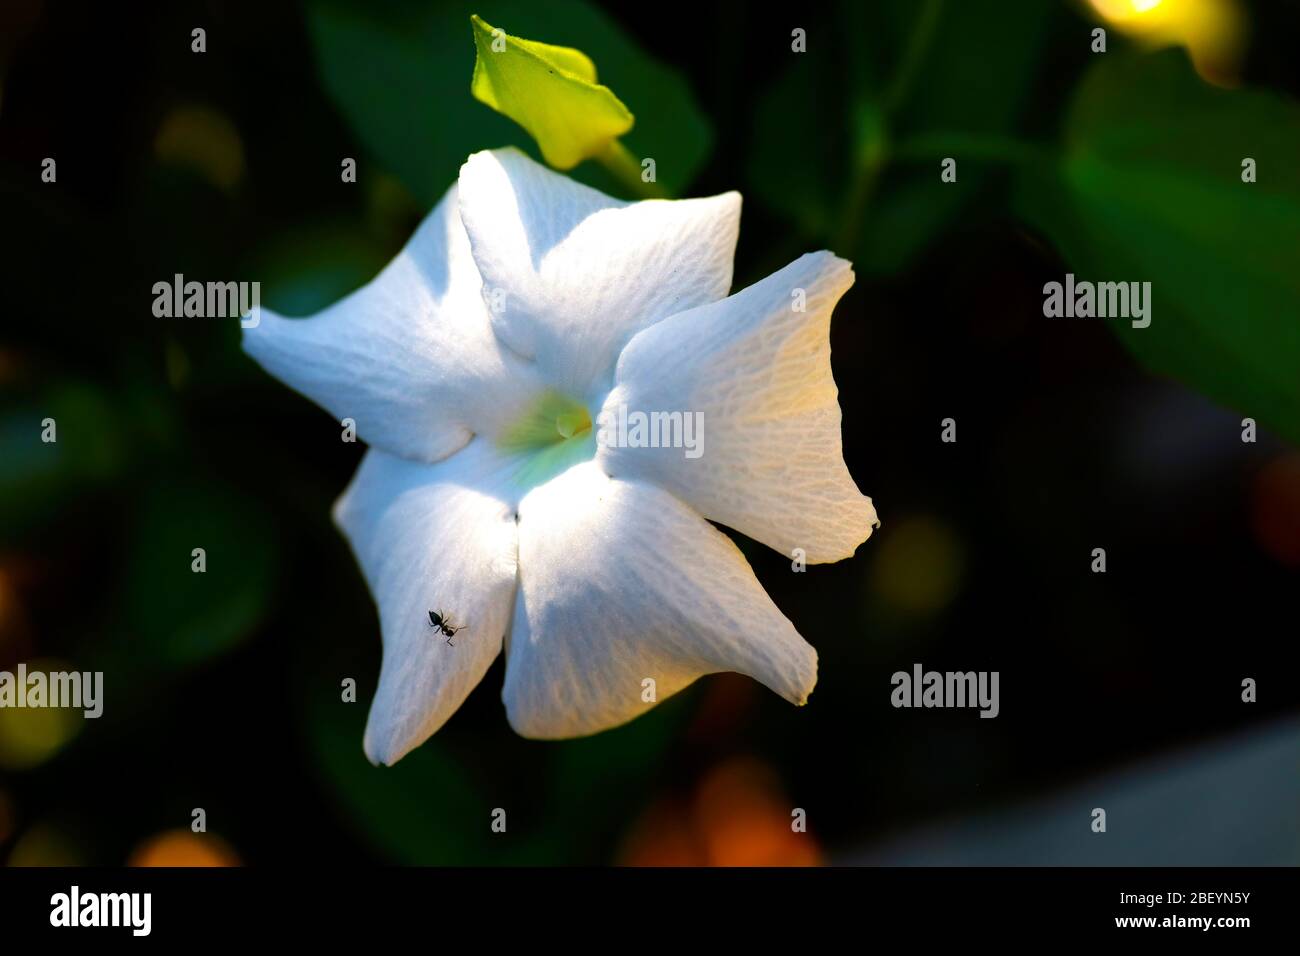 Bella, bianco floreale in piena fioritura, immagine della pianta. Fuori in giardino in una giornata calda, ripresa da vicino in macro. Foto Stock